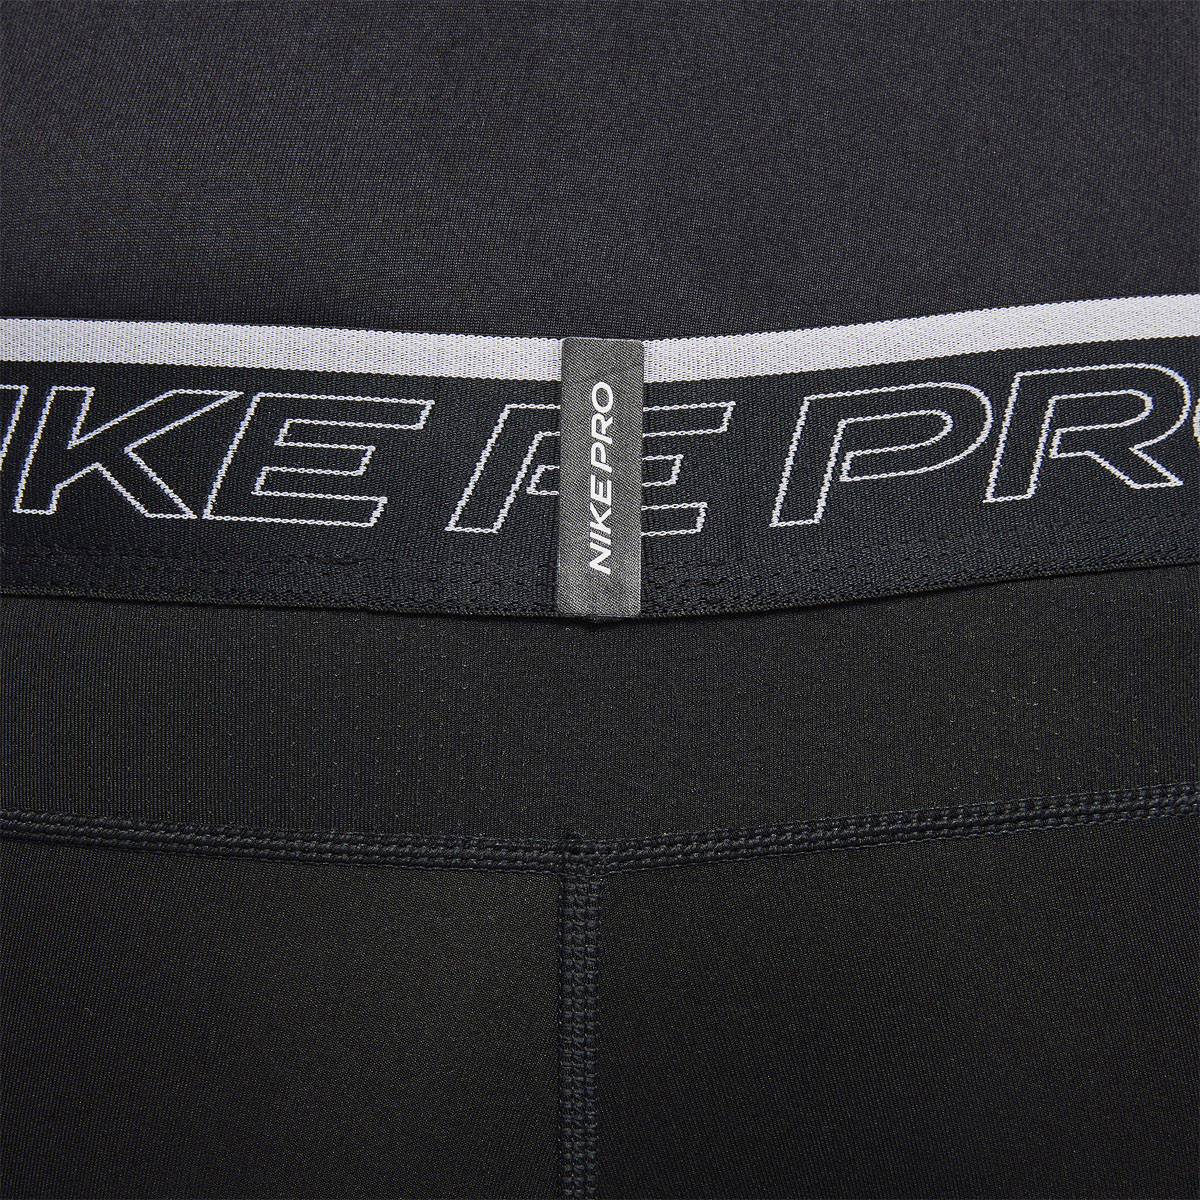 NIKE PRO DRI-FIT TIGHTS SHORTS - NIKE - Men's - Clothing